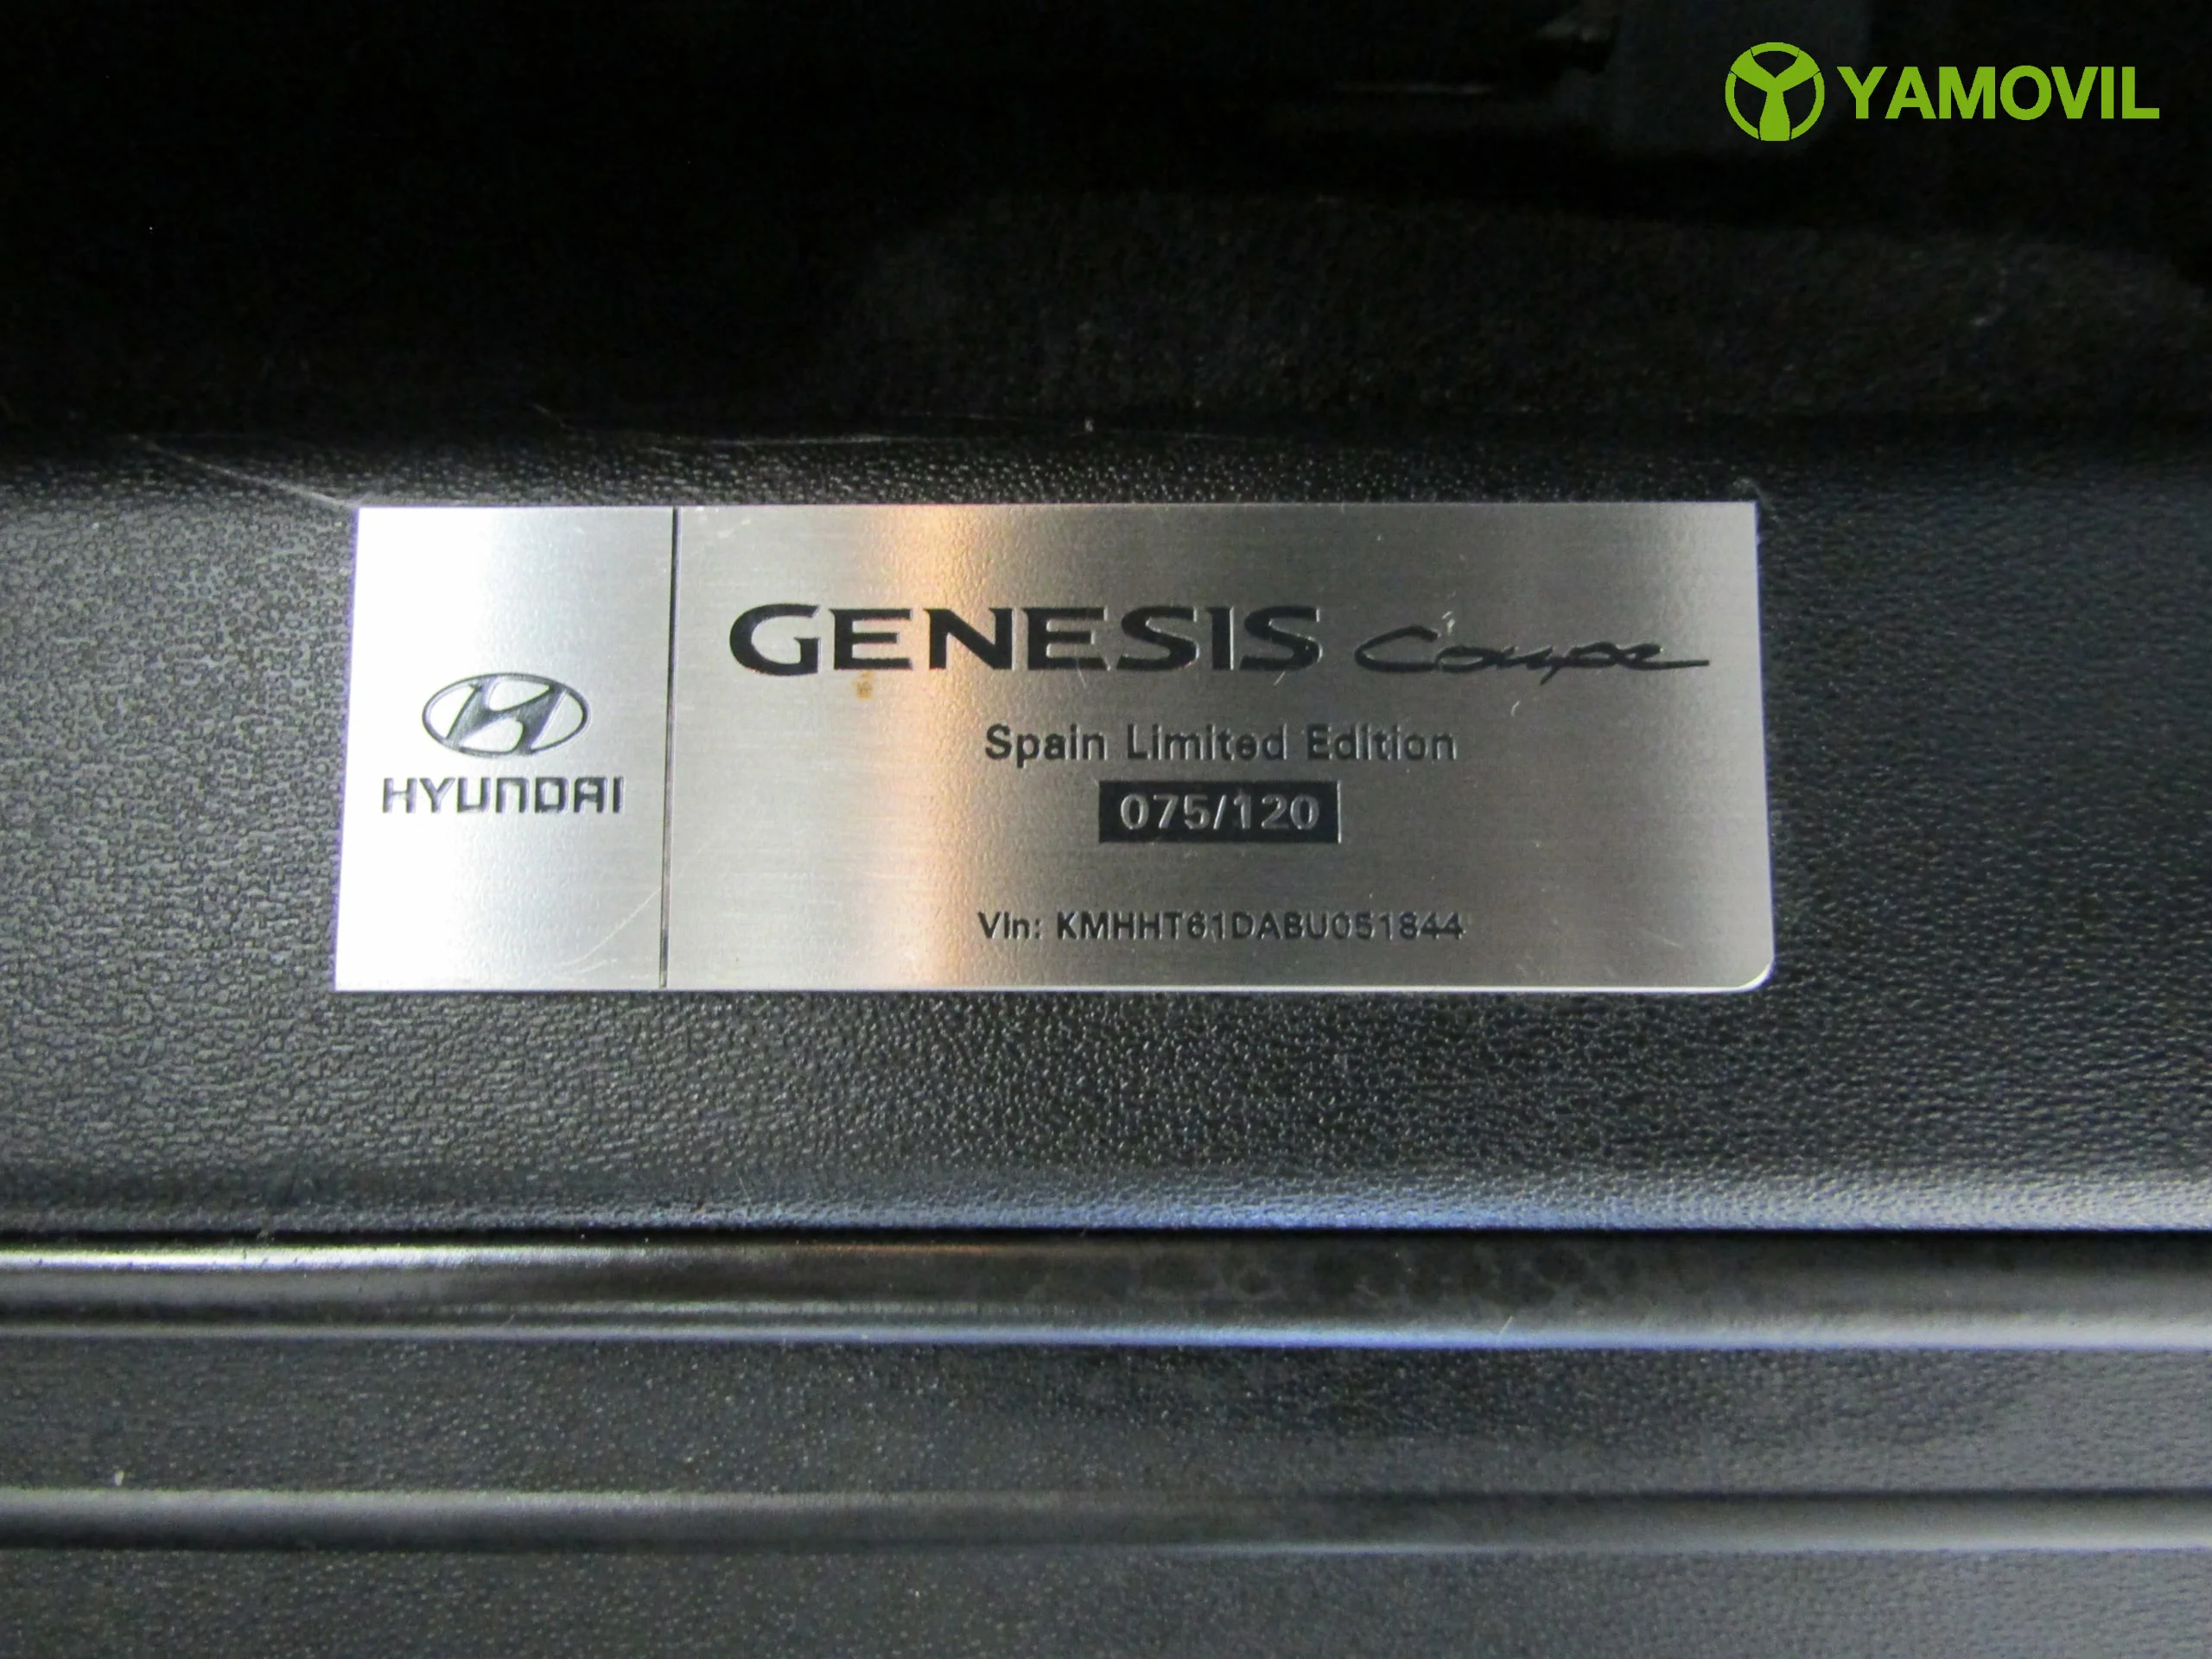 Hyundai Genesis Coupe 2.0T 213CV - Foto 36